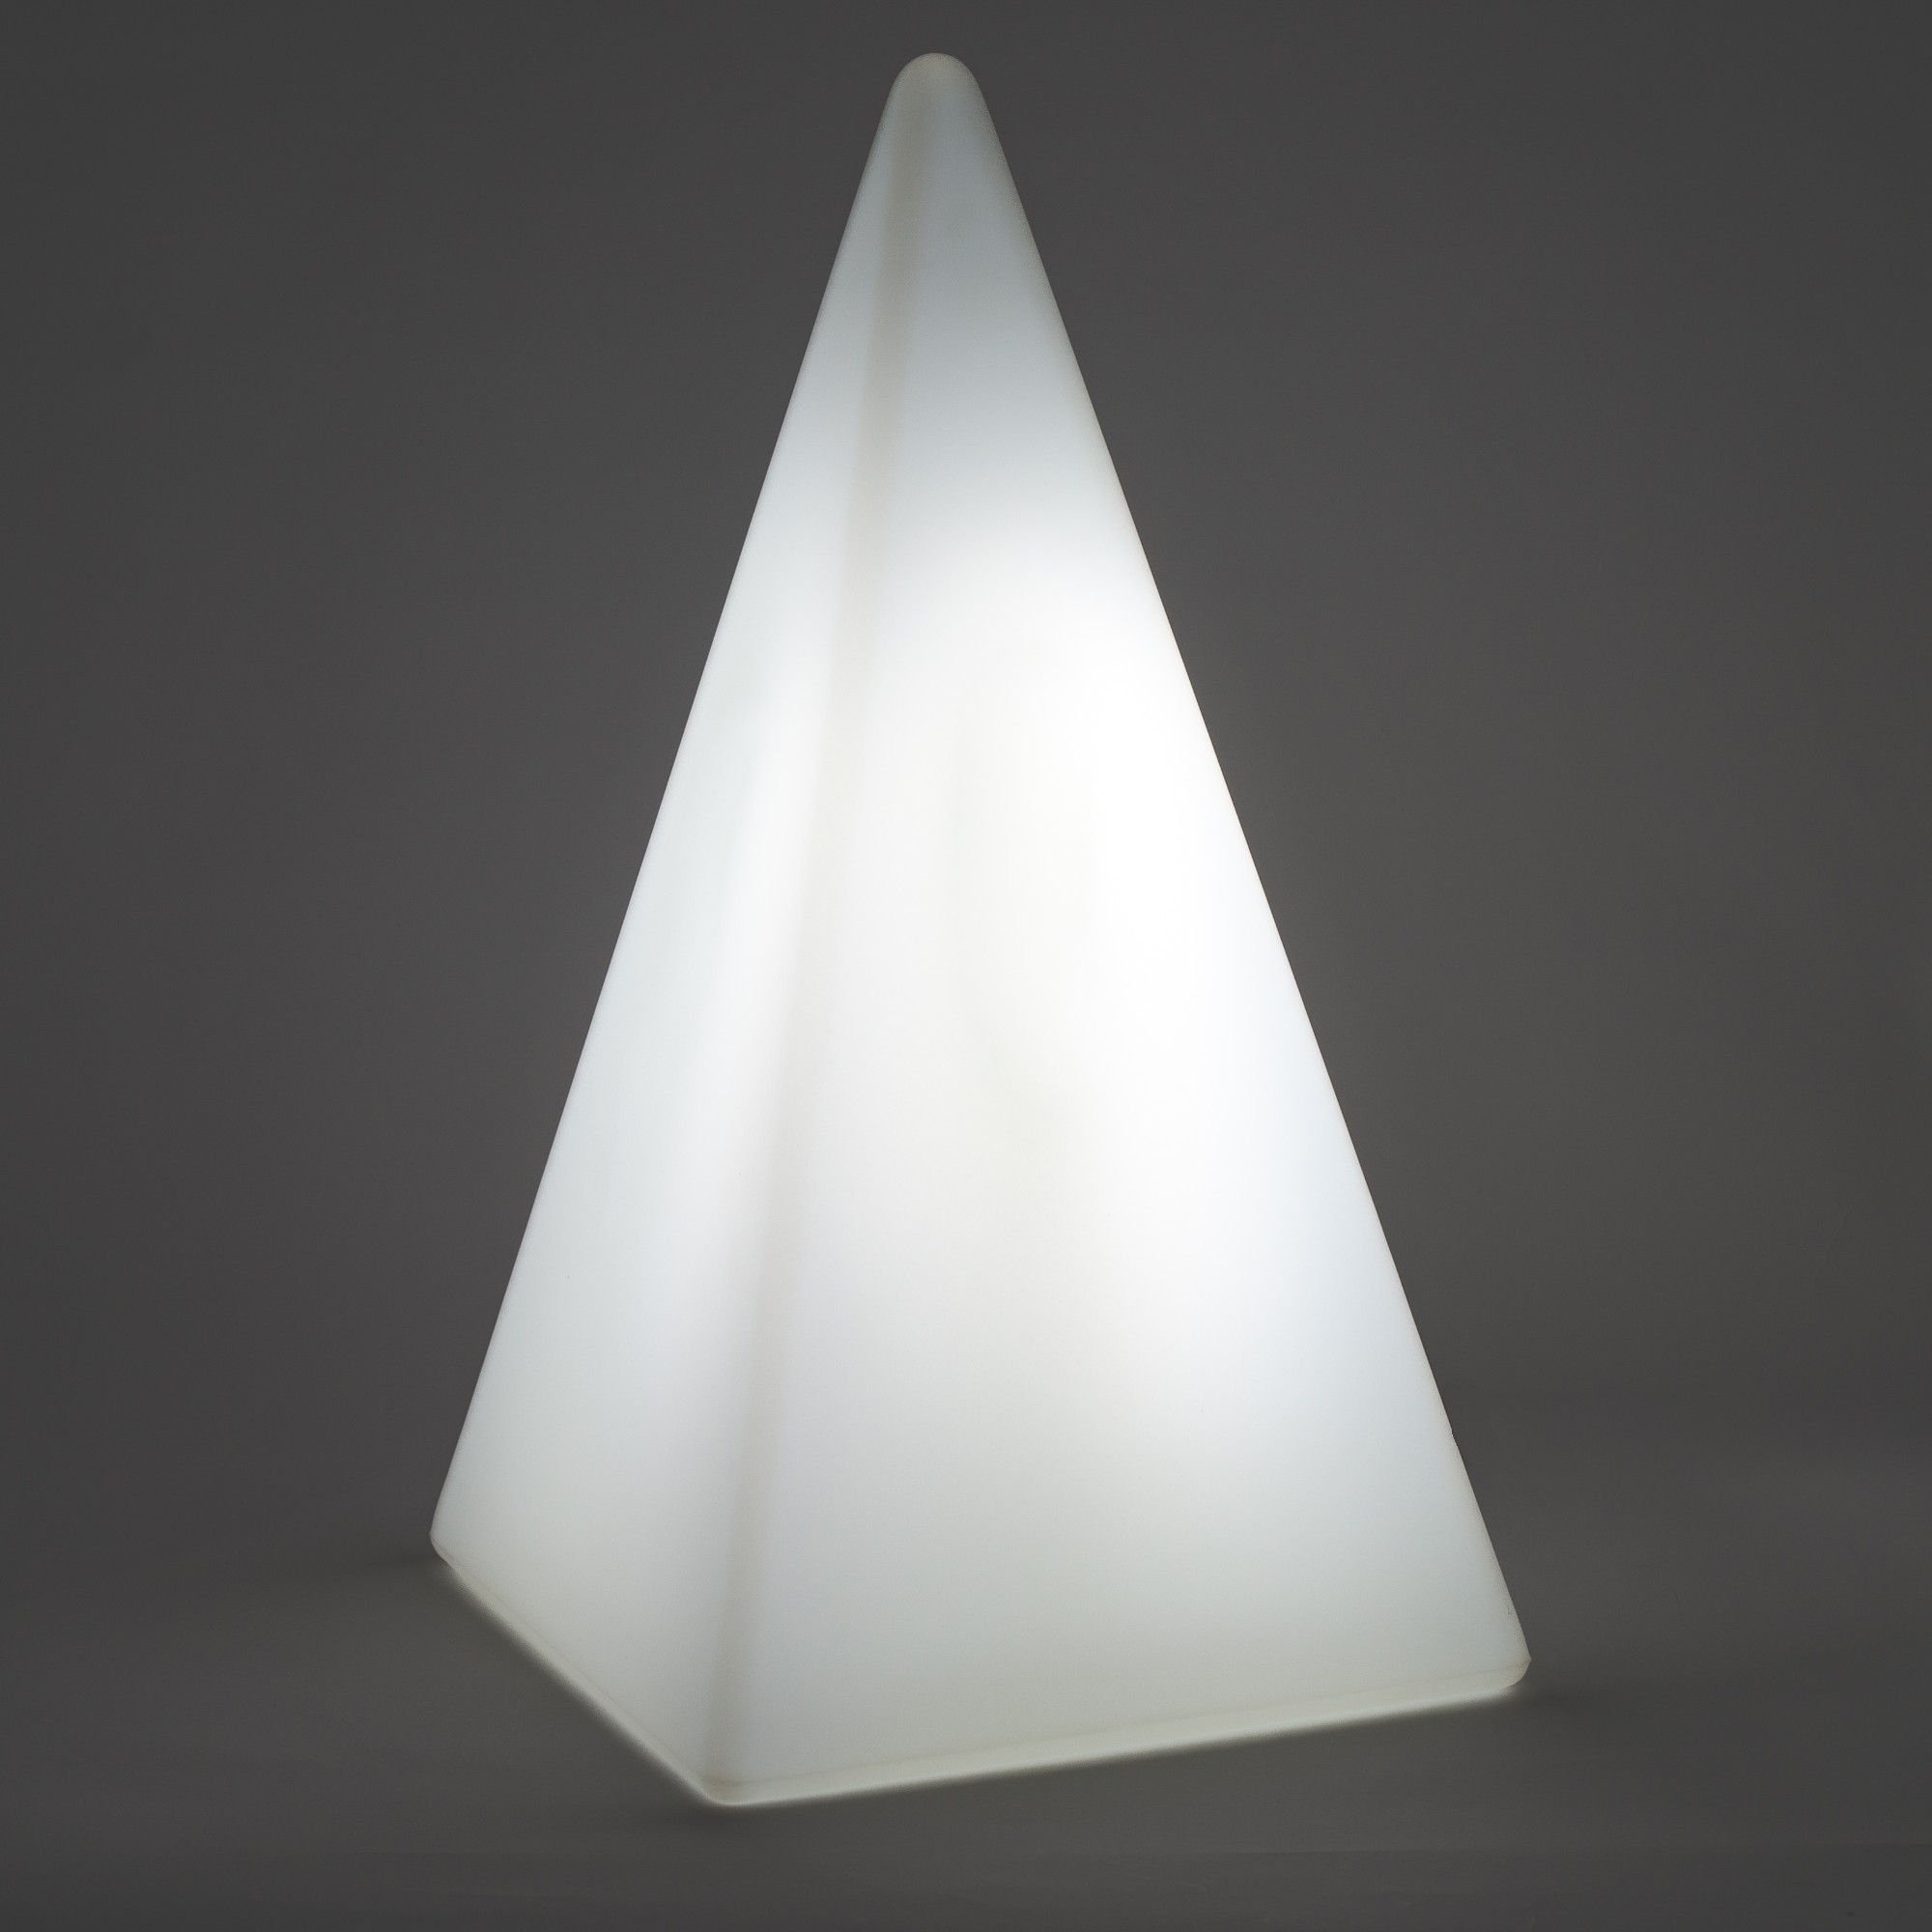 Leuchtobjekte & Lichtobjekte für Garten und Outdoor von EPSTEIN Design Leuchten Standleuchte Pyramide 70424